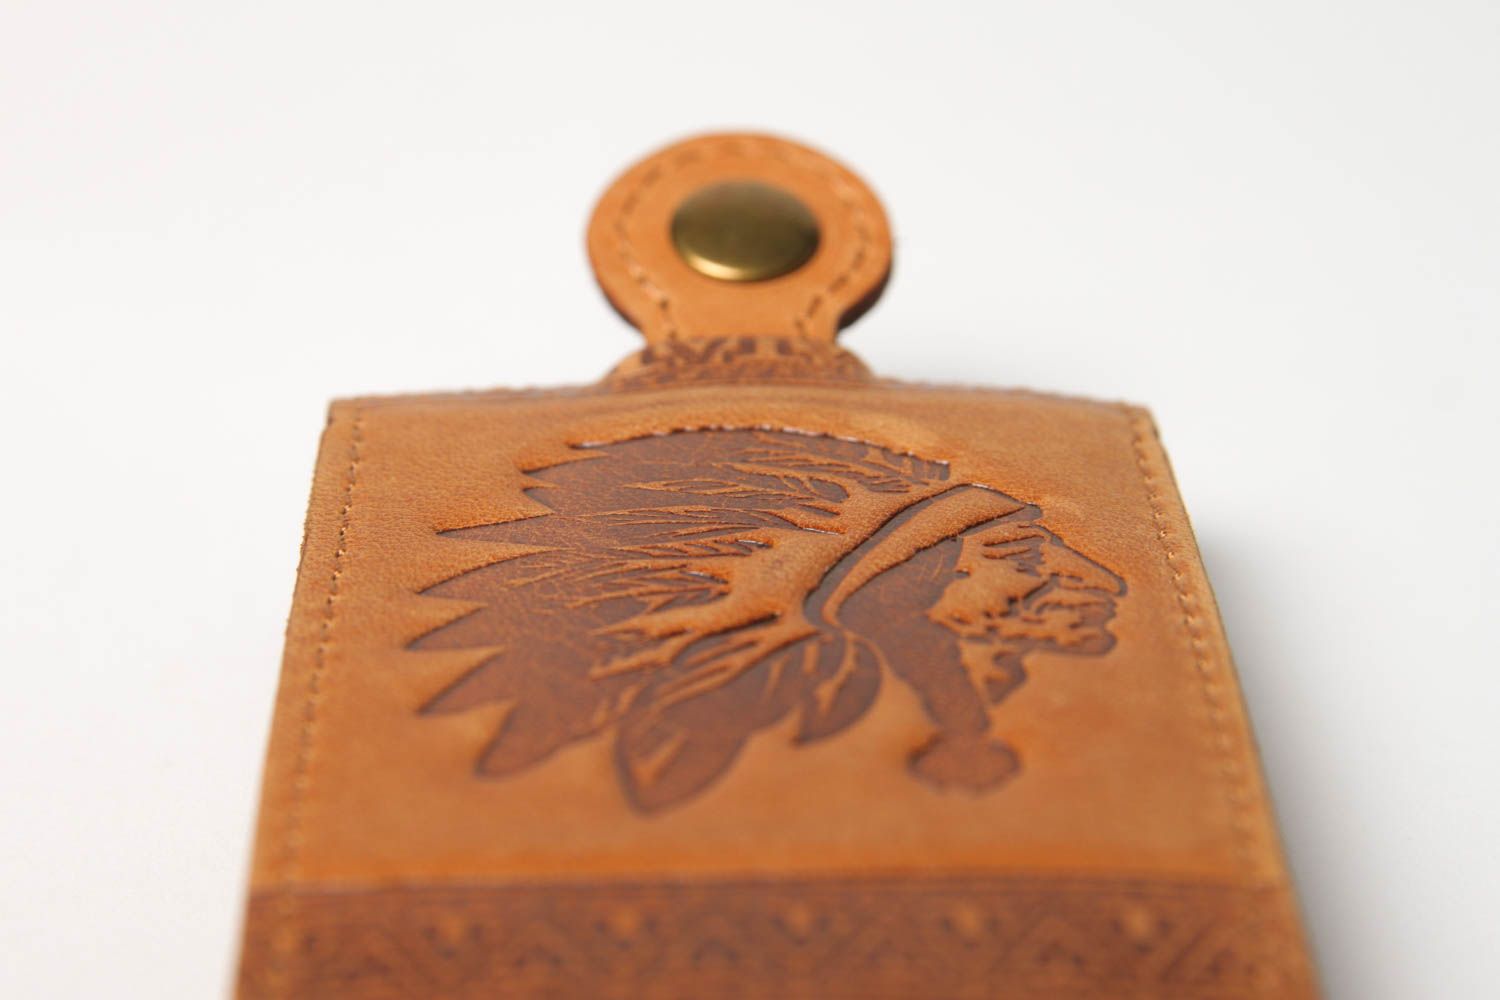 Stylish handmade leather key case unusual key holder design best gift ideas photo 5